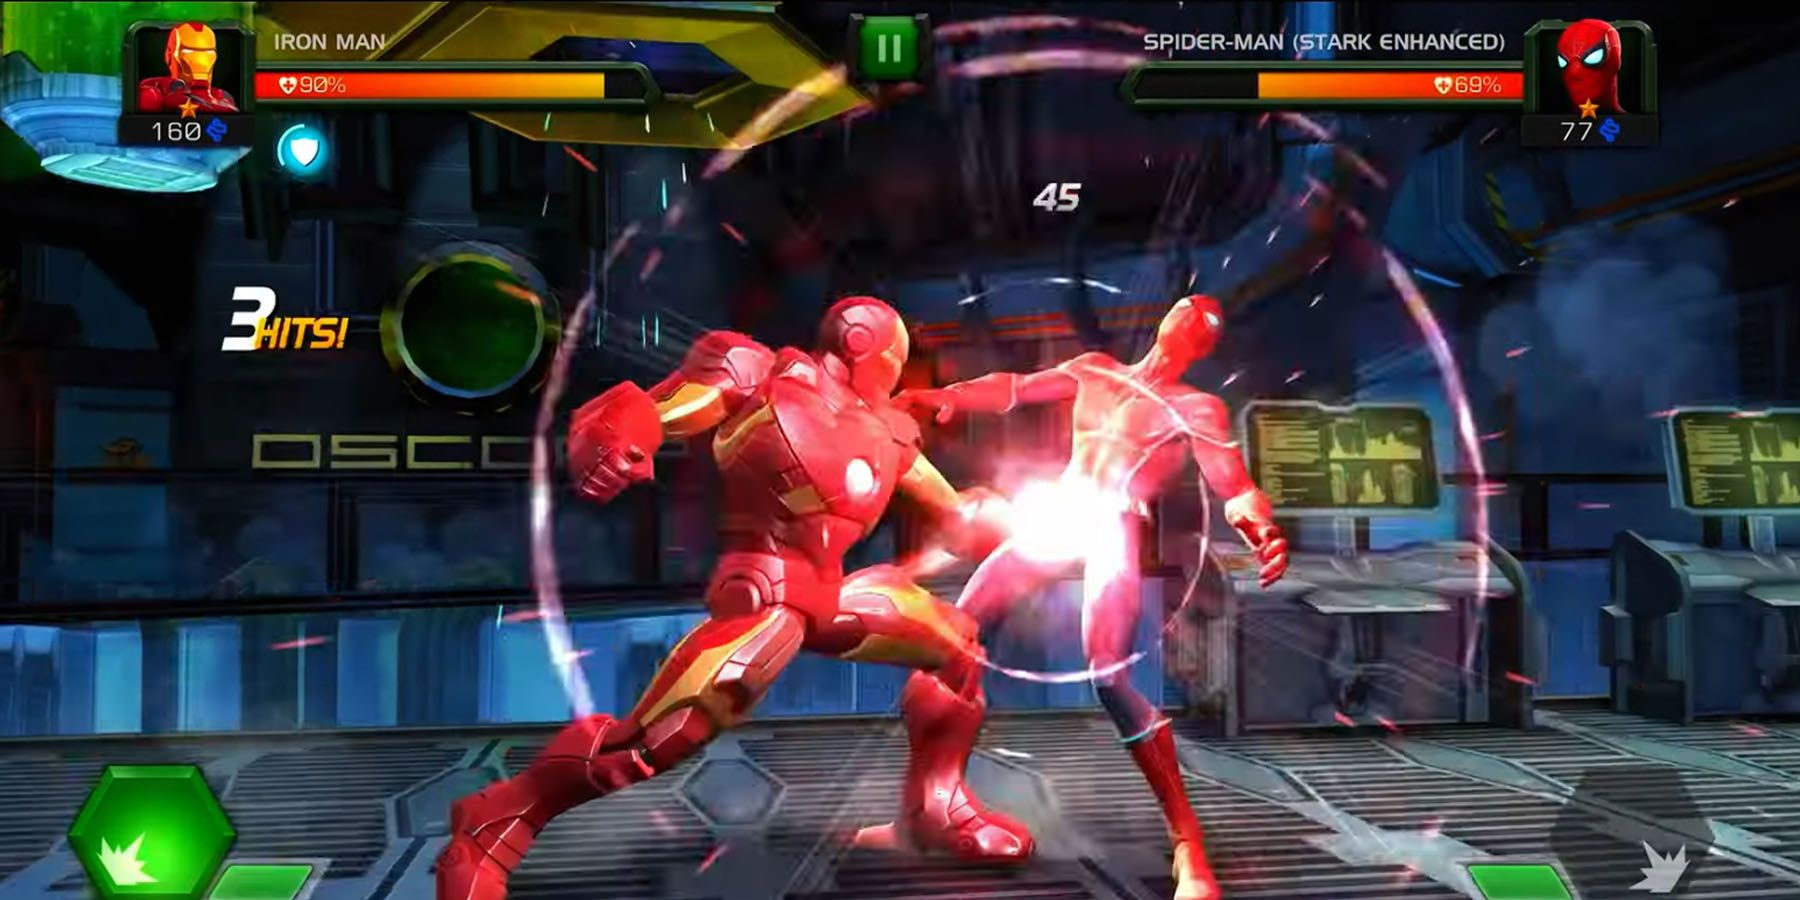 Iron Man punching Spider-Man